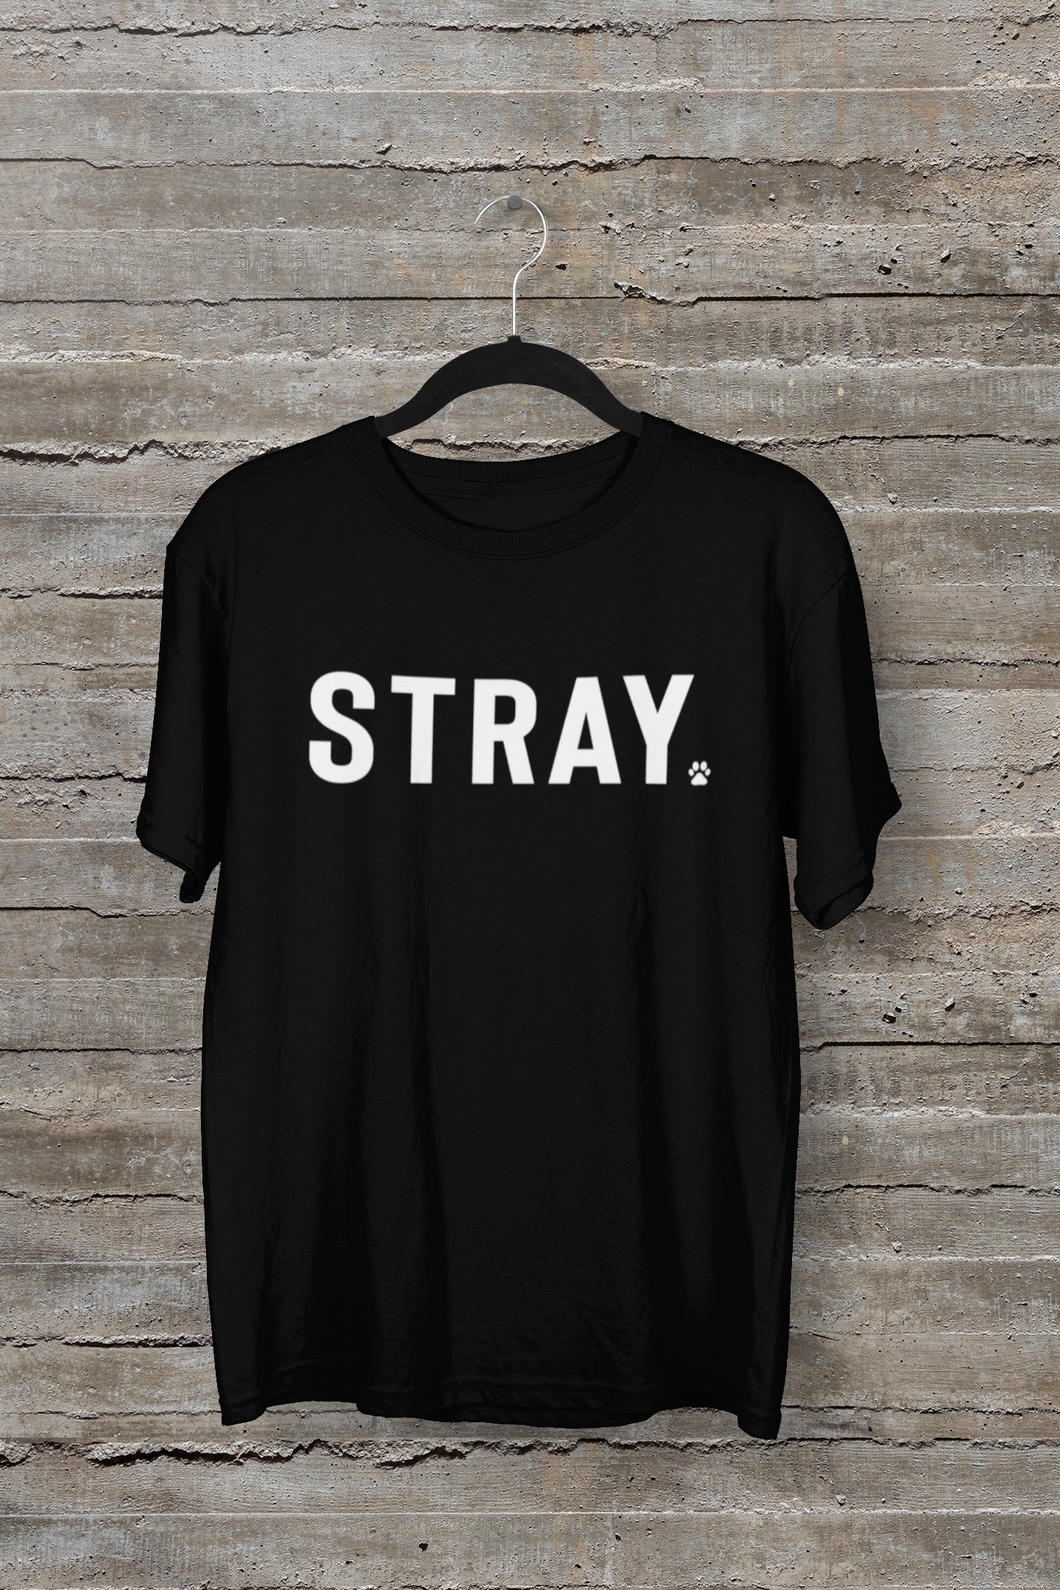 Stray Men's/Unisex or Women's T-shirt